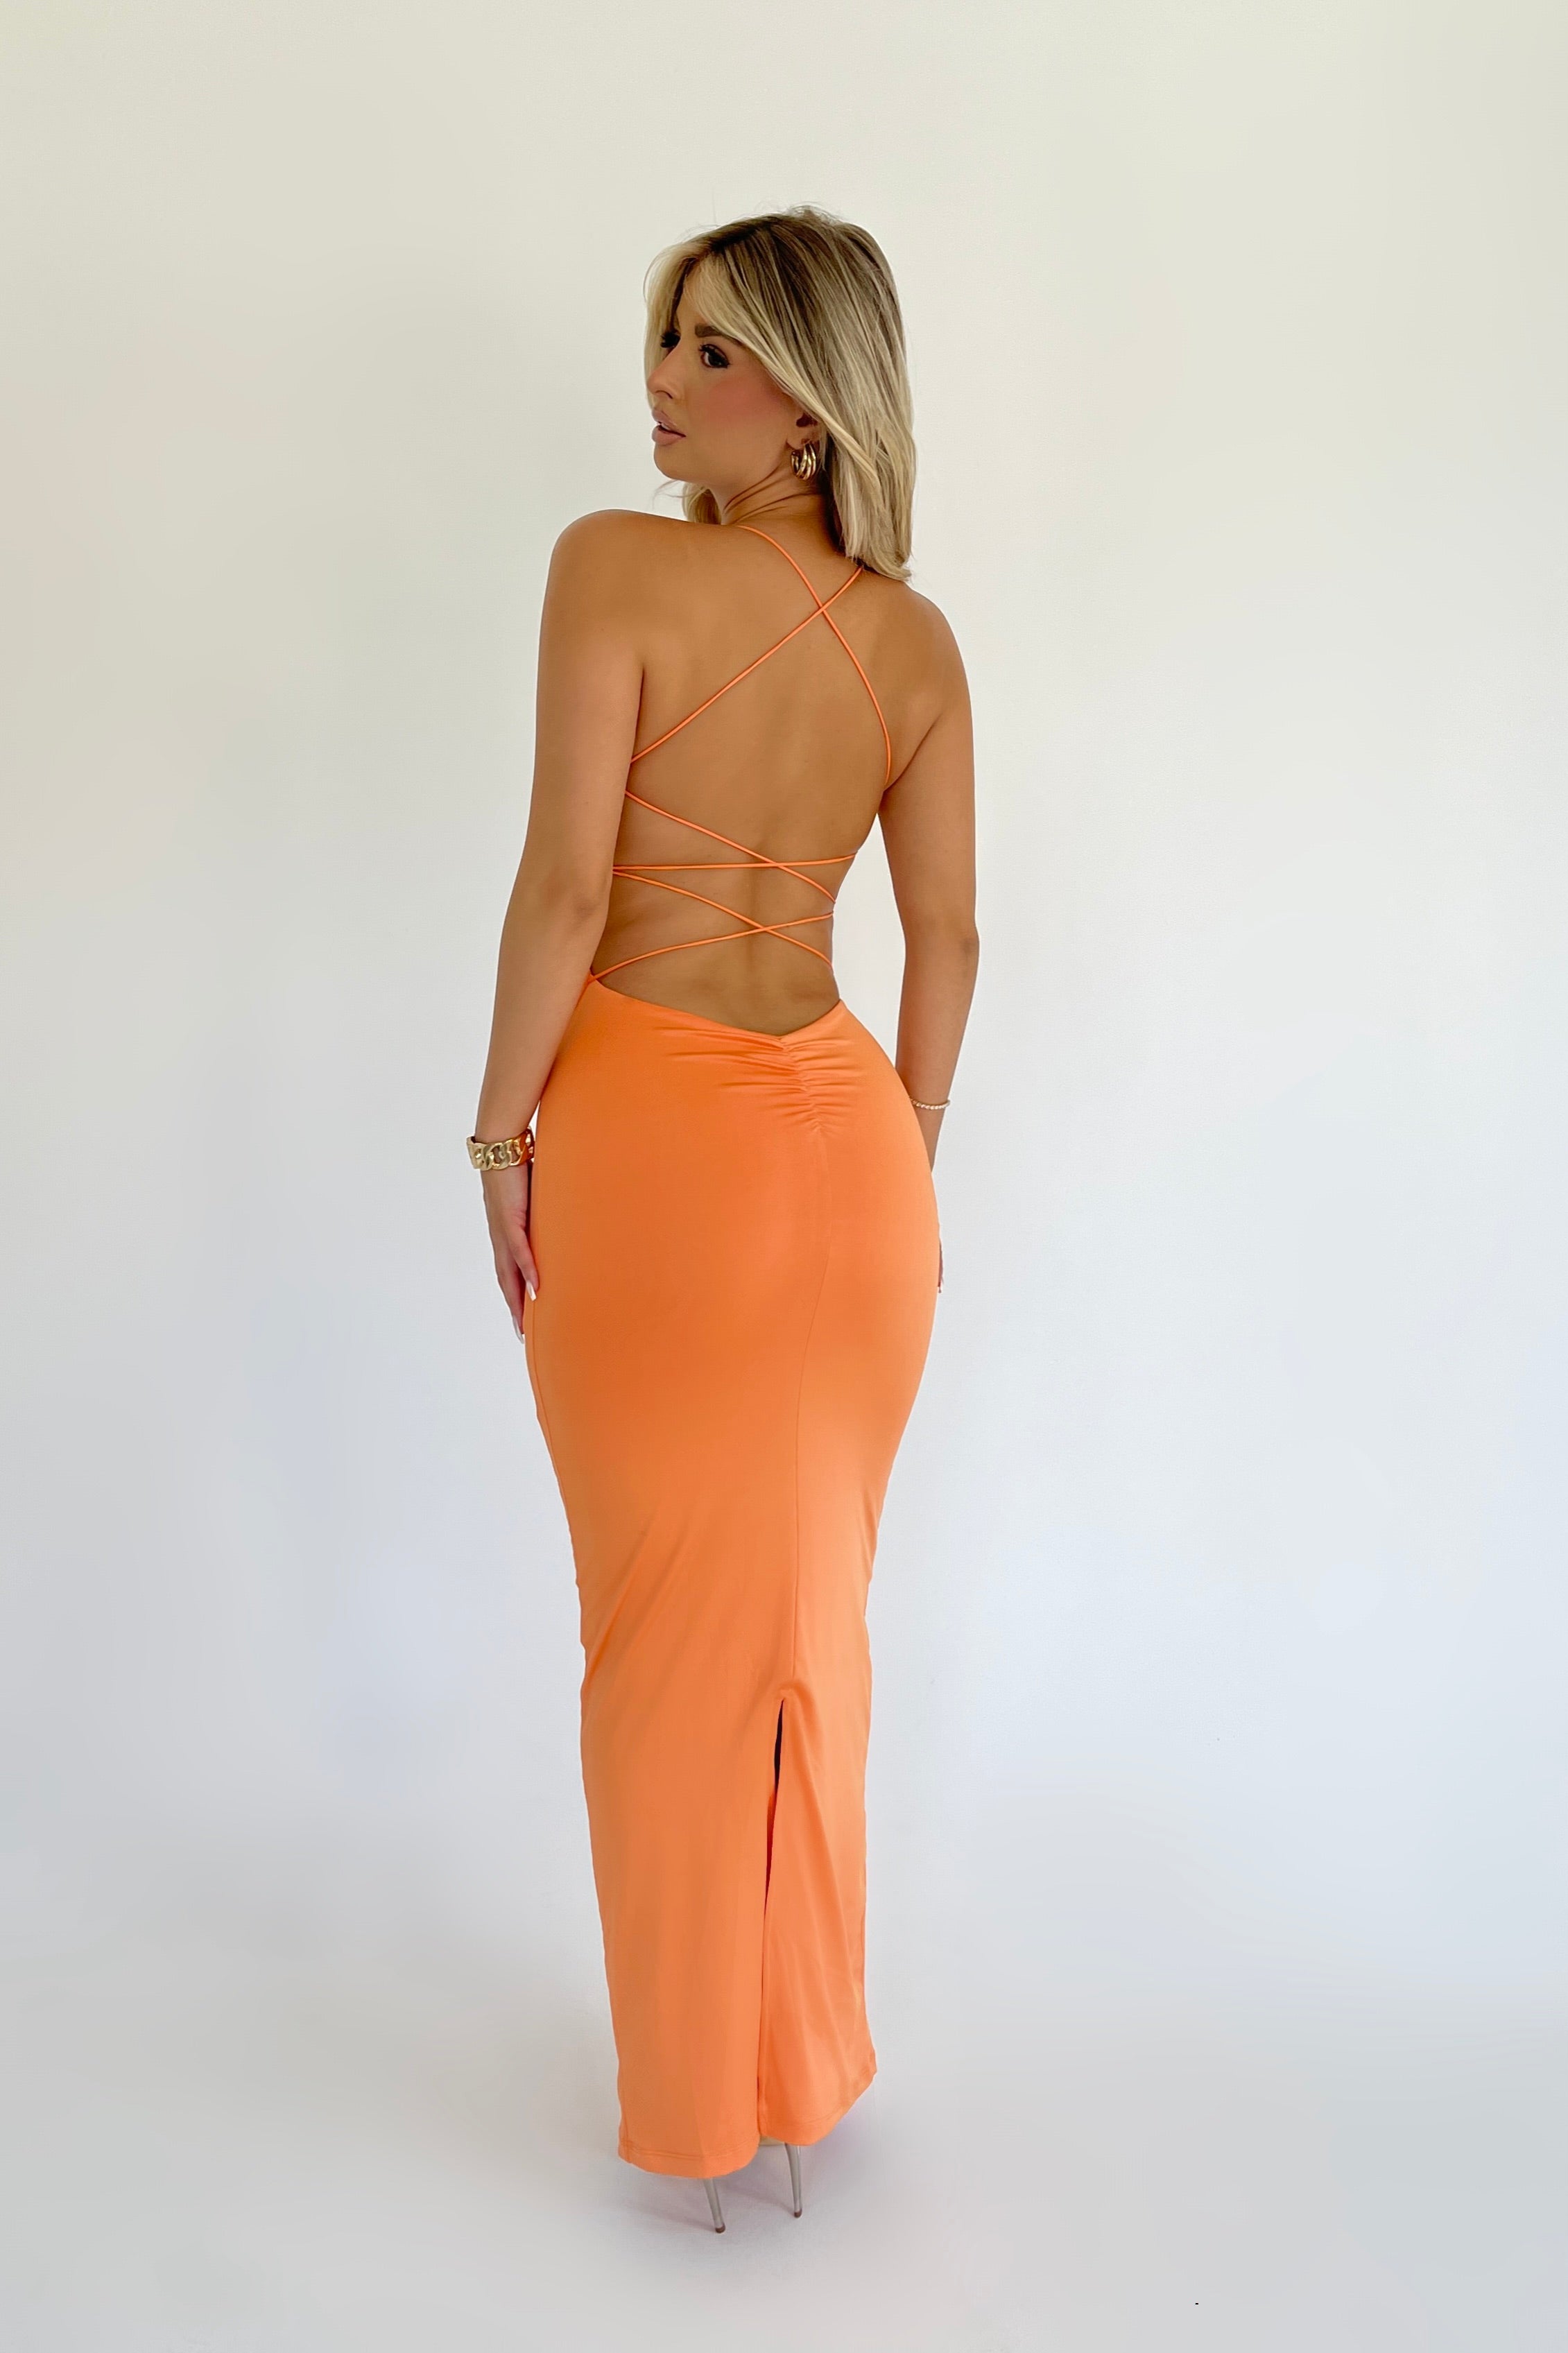 Sahara Tangerine Dress